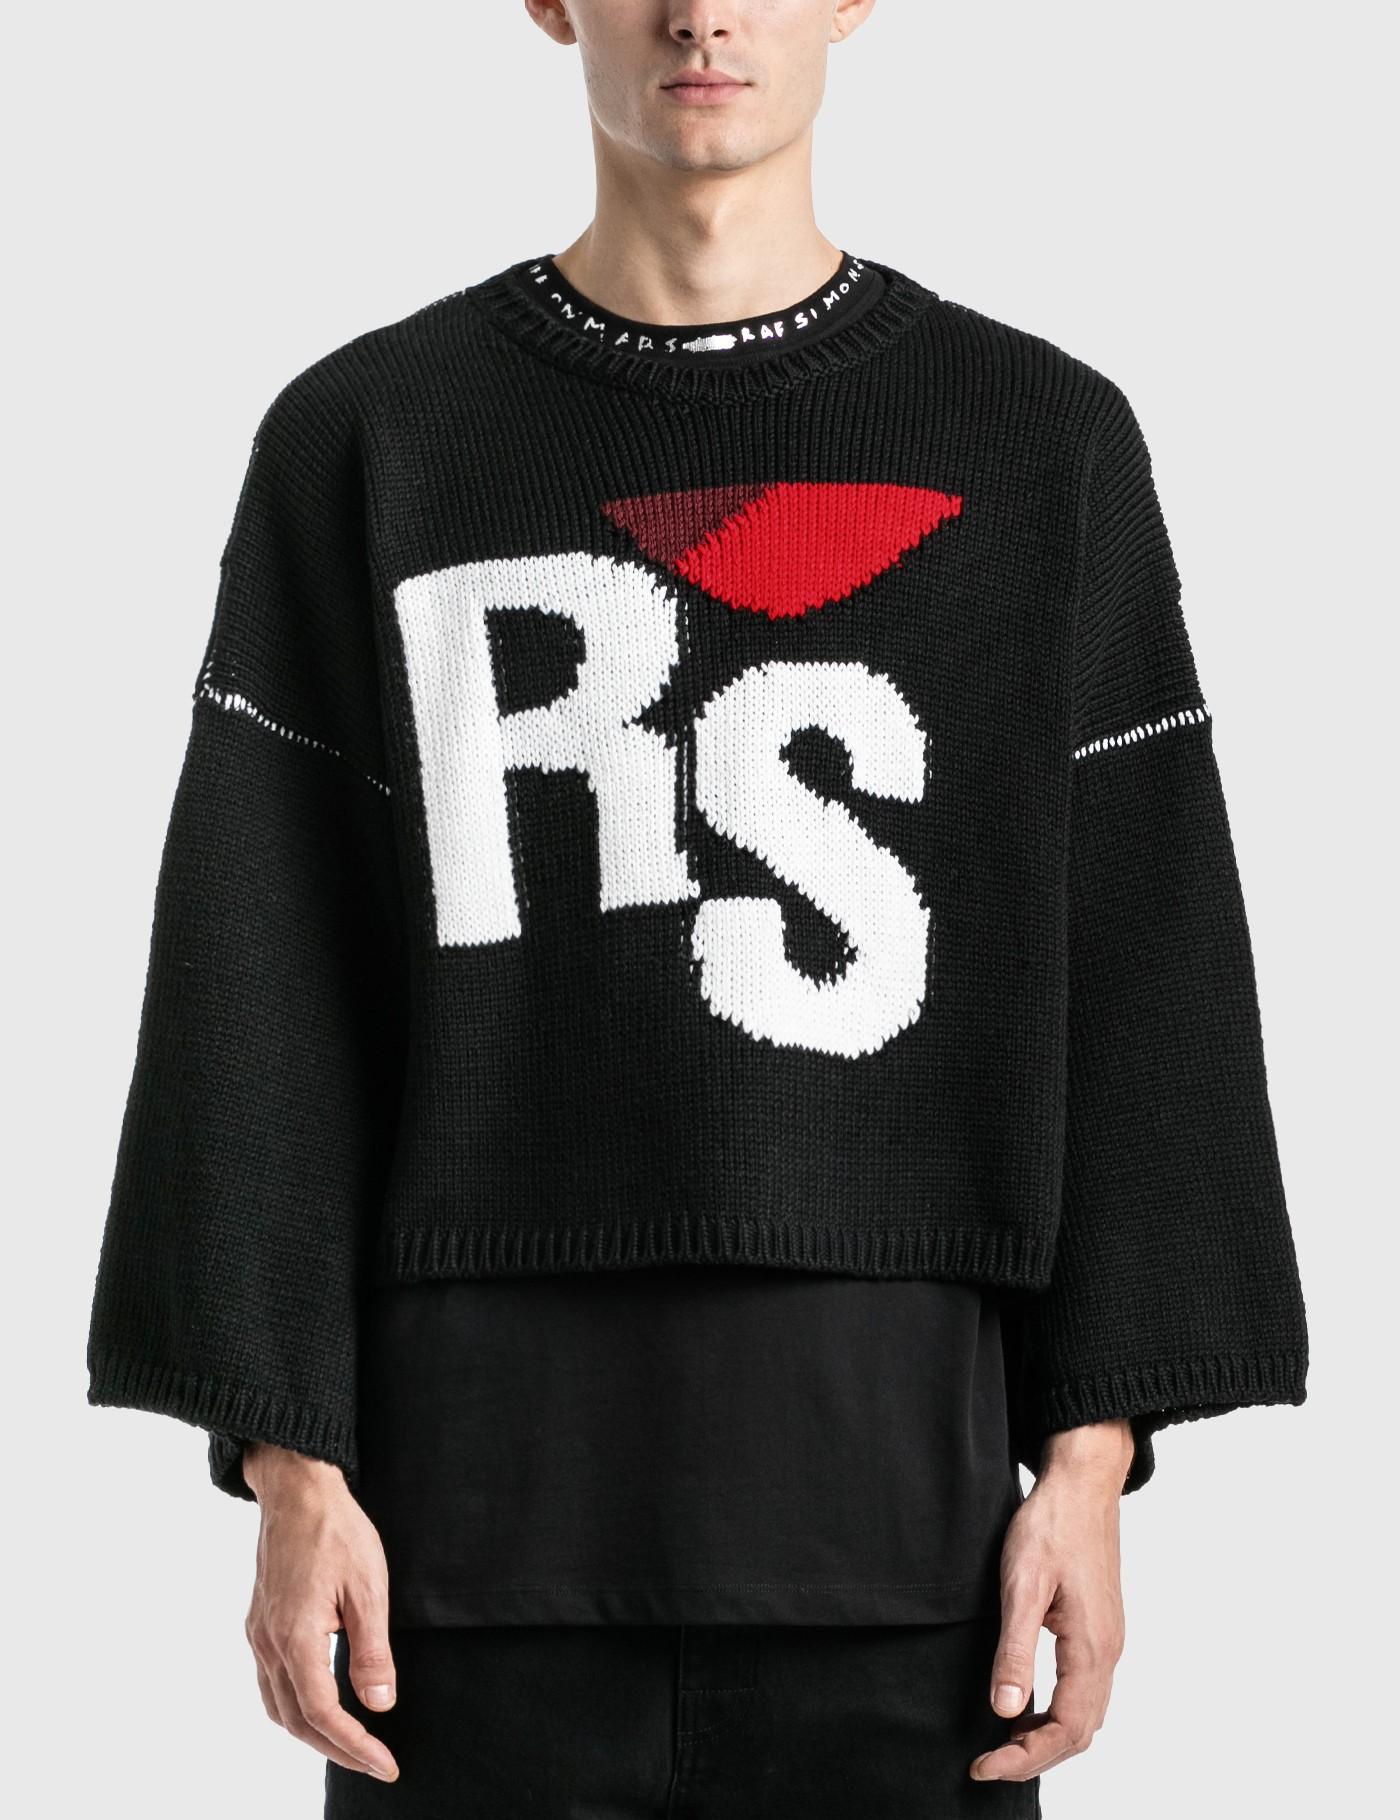 Raf Simons Oversized Rs Sweater in Black for Men - Lyst